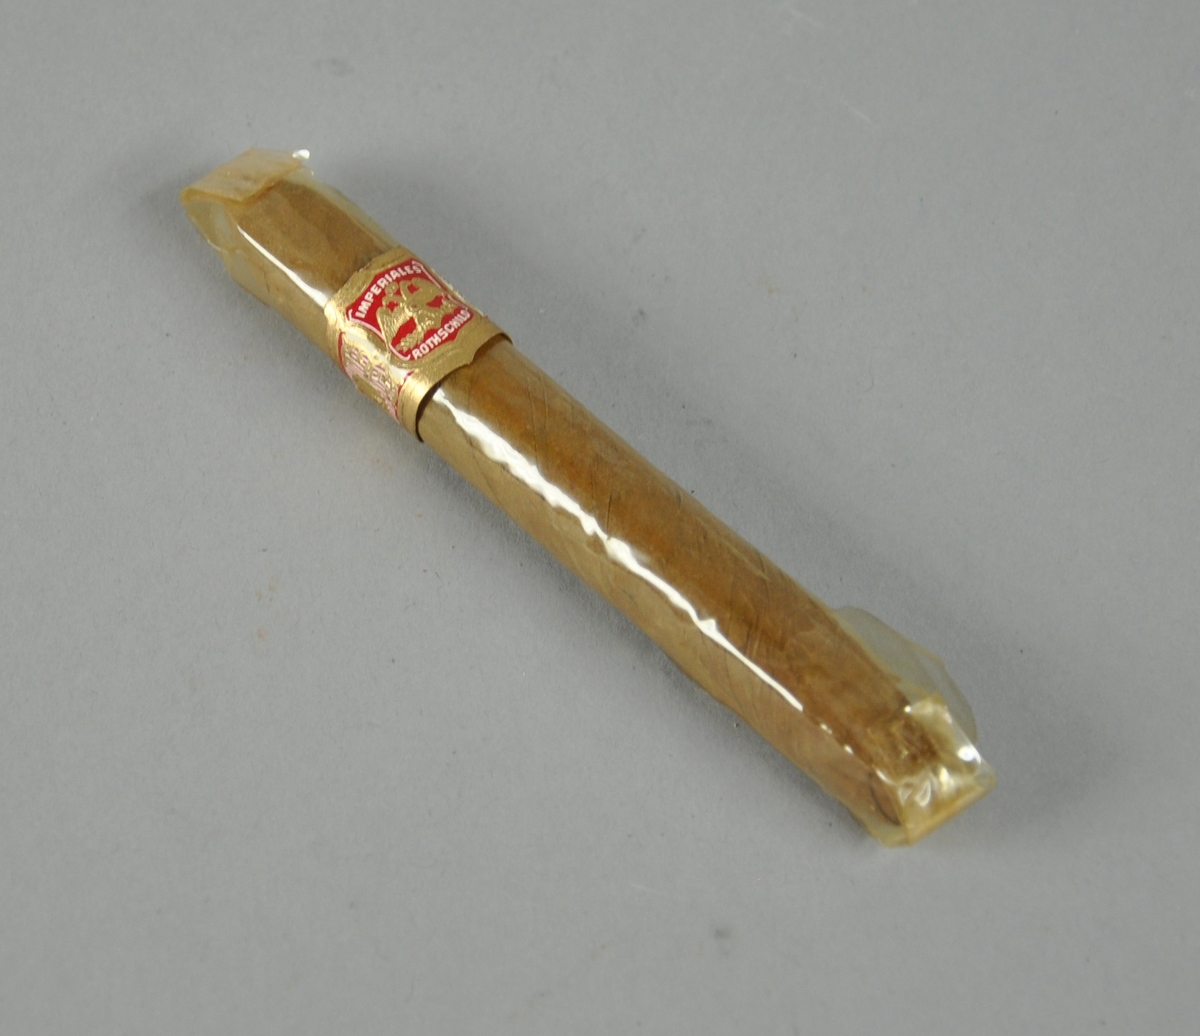 Sigaren er innpakket i cellofan med forseglede ender. Rundt sigaren gull-, rød- og hvitfarget mavebelte på utsiden av cellofanpakningen.